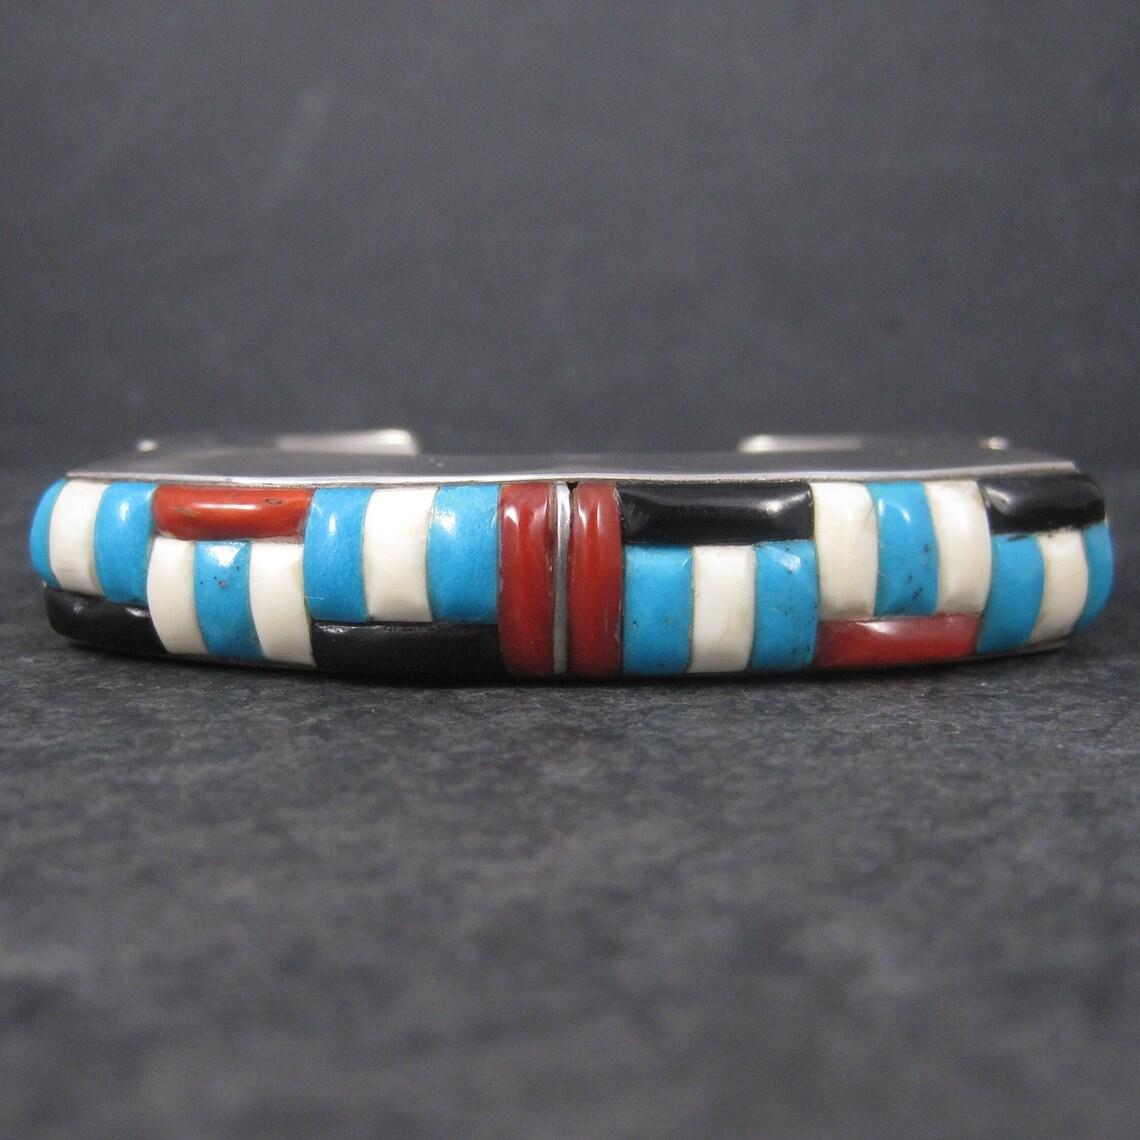 Ce magnifique bracelet manchette vintage présente des incrustations de pierres précieuses rouges, blanches et bleues avec une touche de jais noir.
Cette pièce est lourde, étonnante et énorme. Il ne s'agit certainement pas d'un bracelet pour les âmes